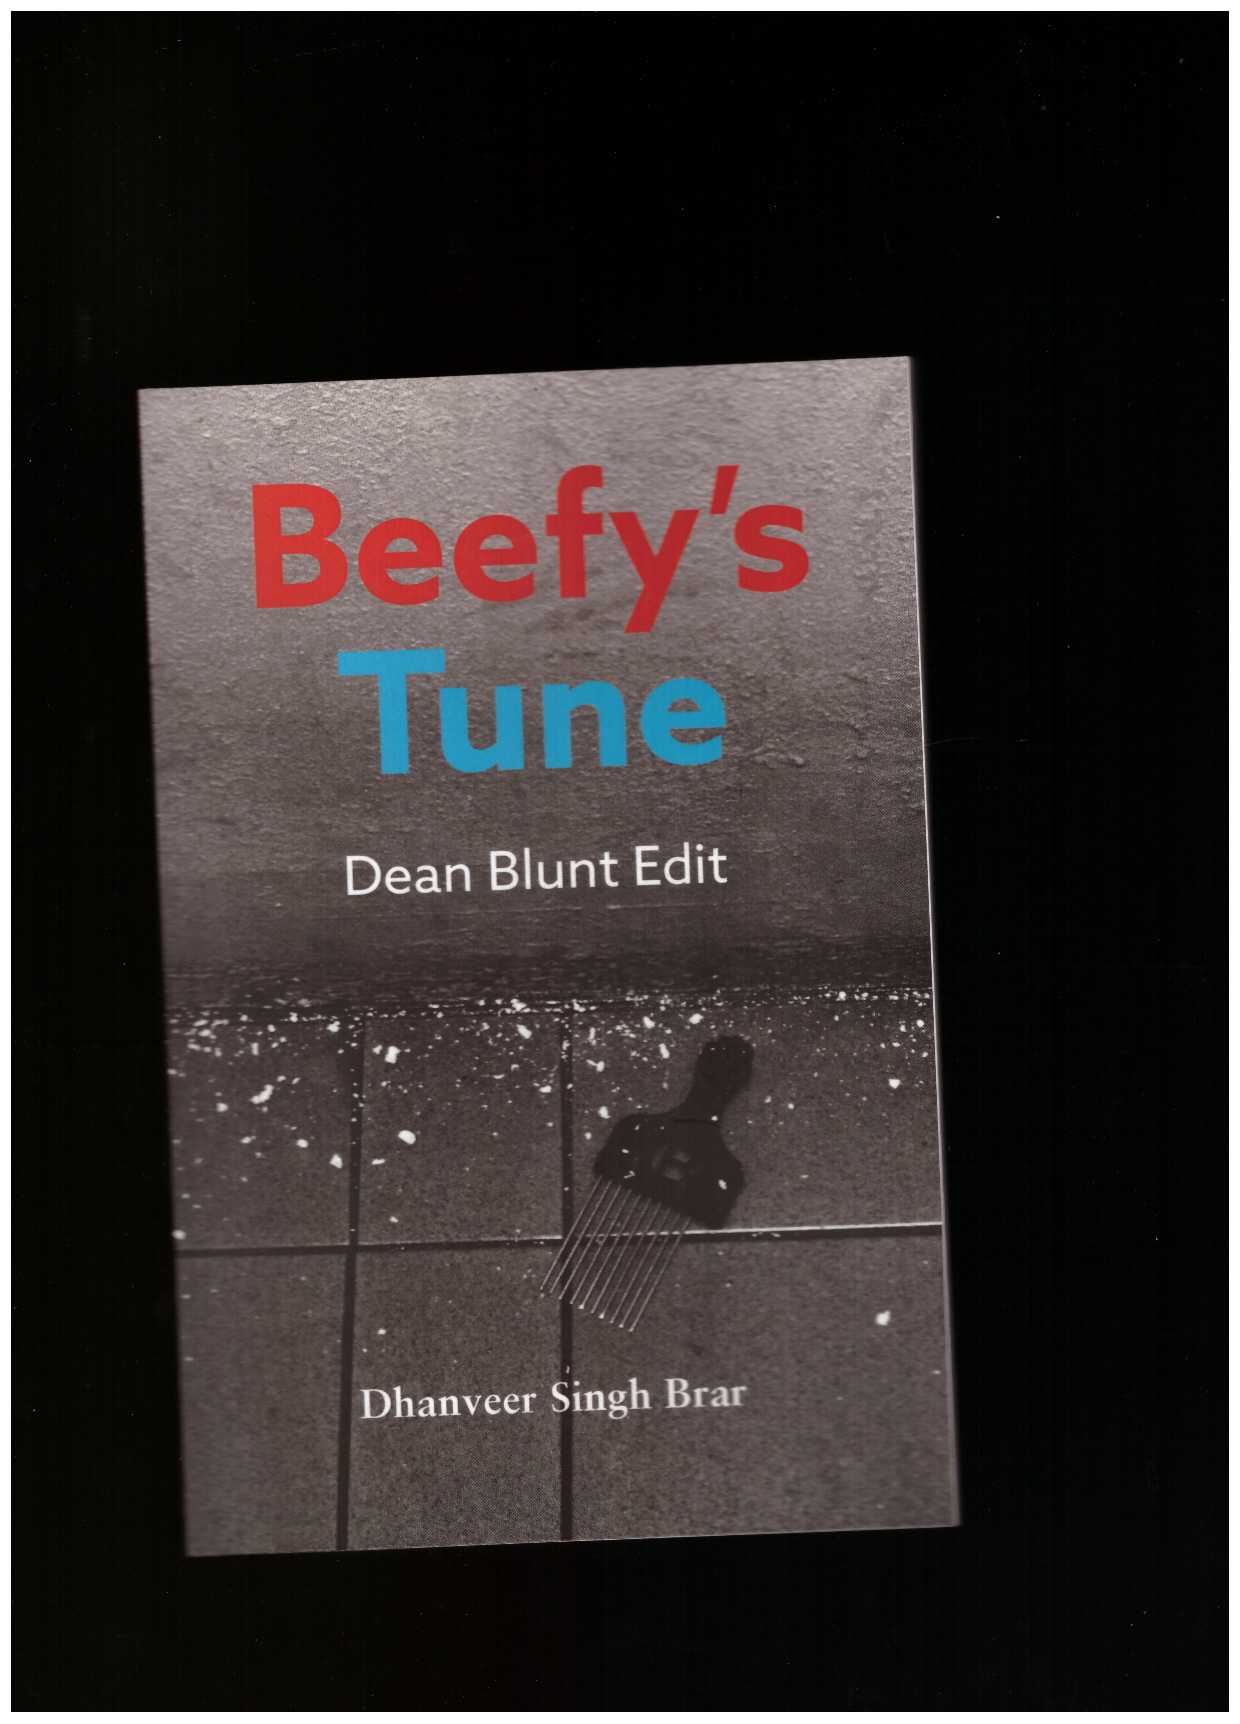 SINGH BRAR, Dhanveer - Beefy's Tune (Dean Blunt Edit)